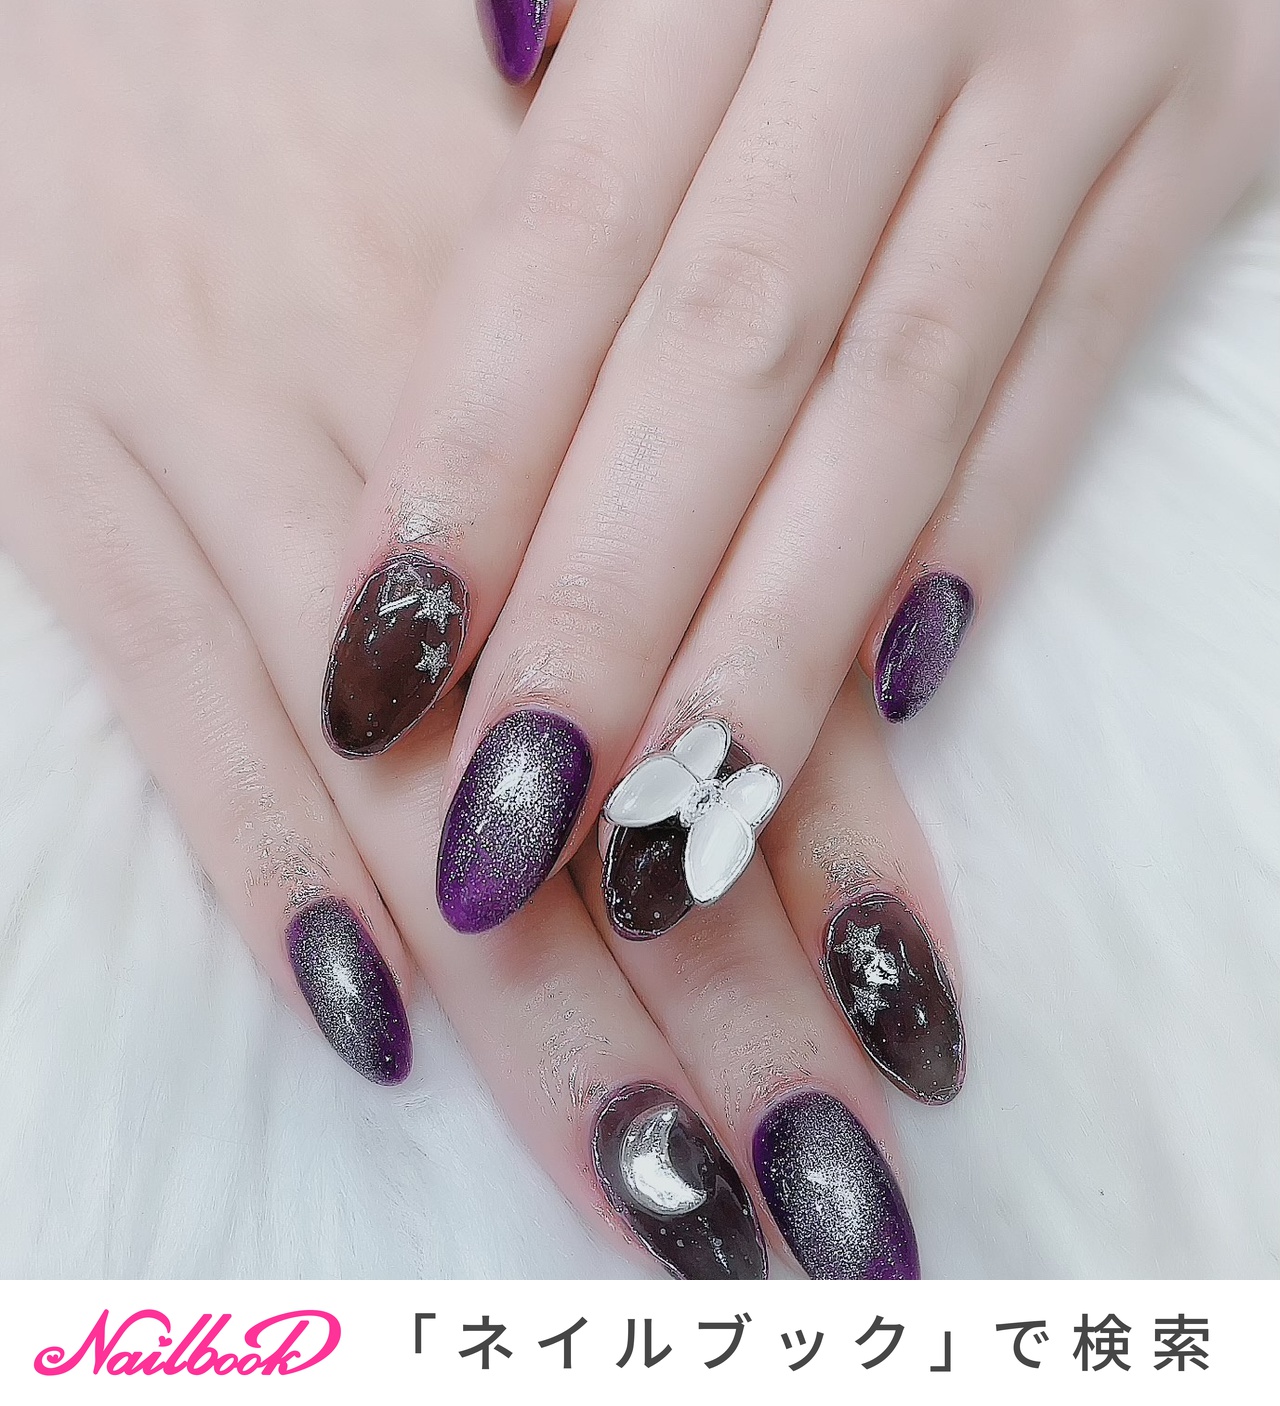 ネイル♡オーダーネイル♡ハートモチーフデザインネイル♡紫×黒♡